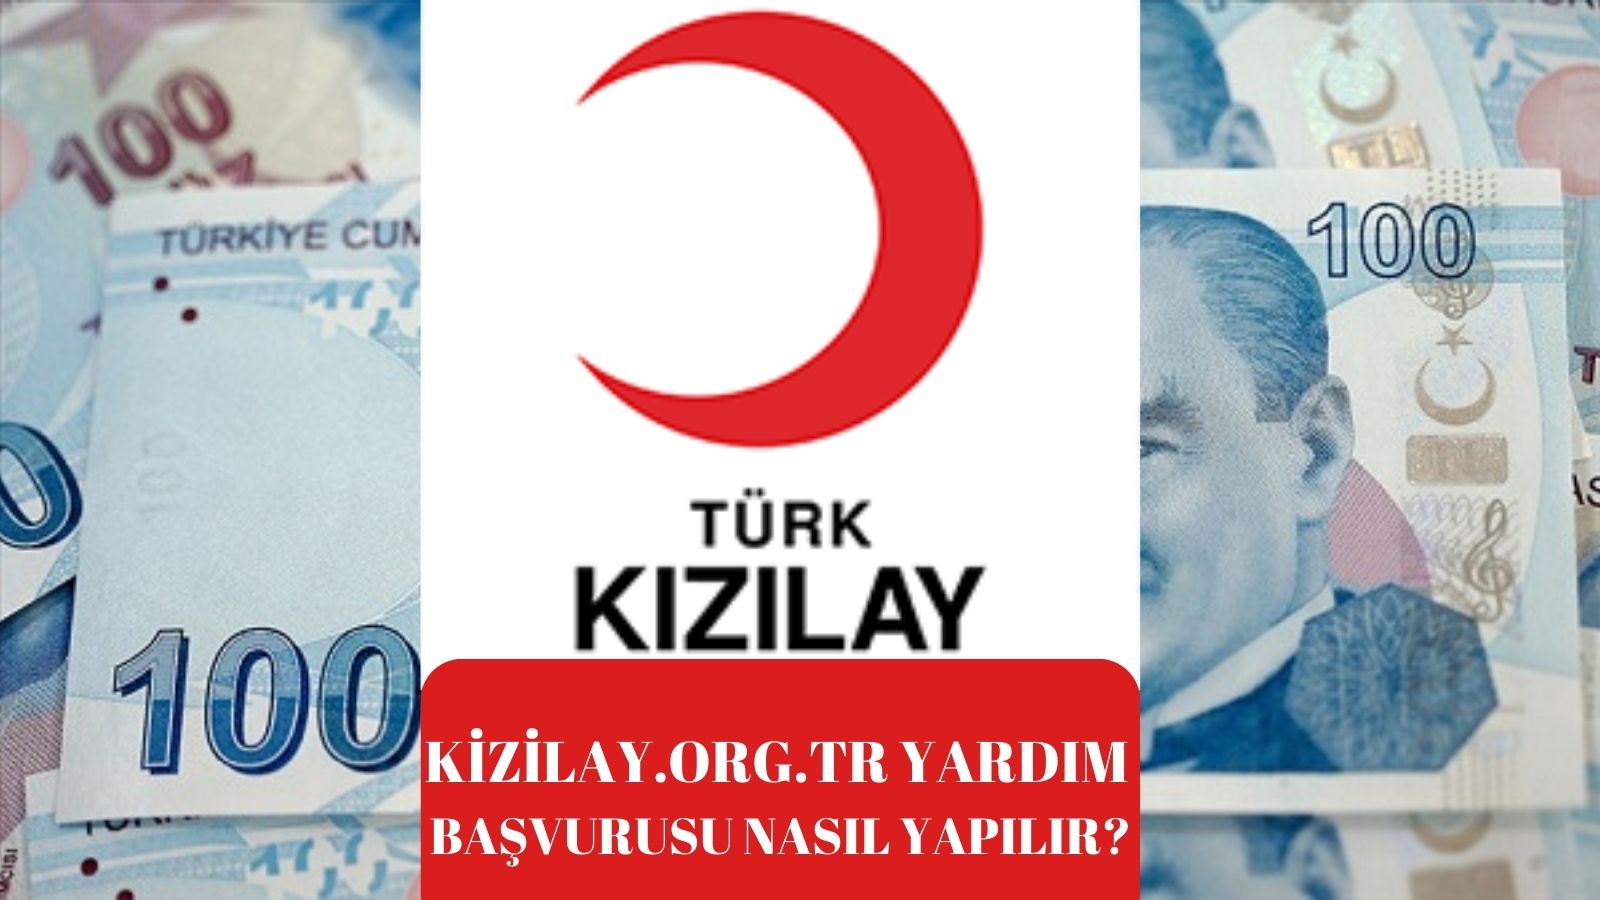 kizilay.org.tr yardım başvurusu